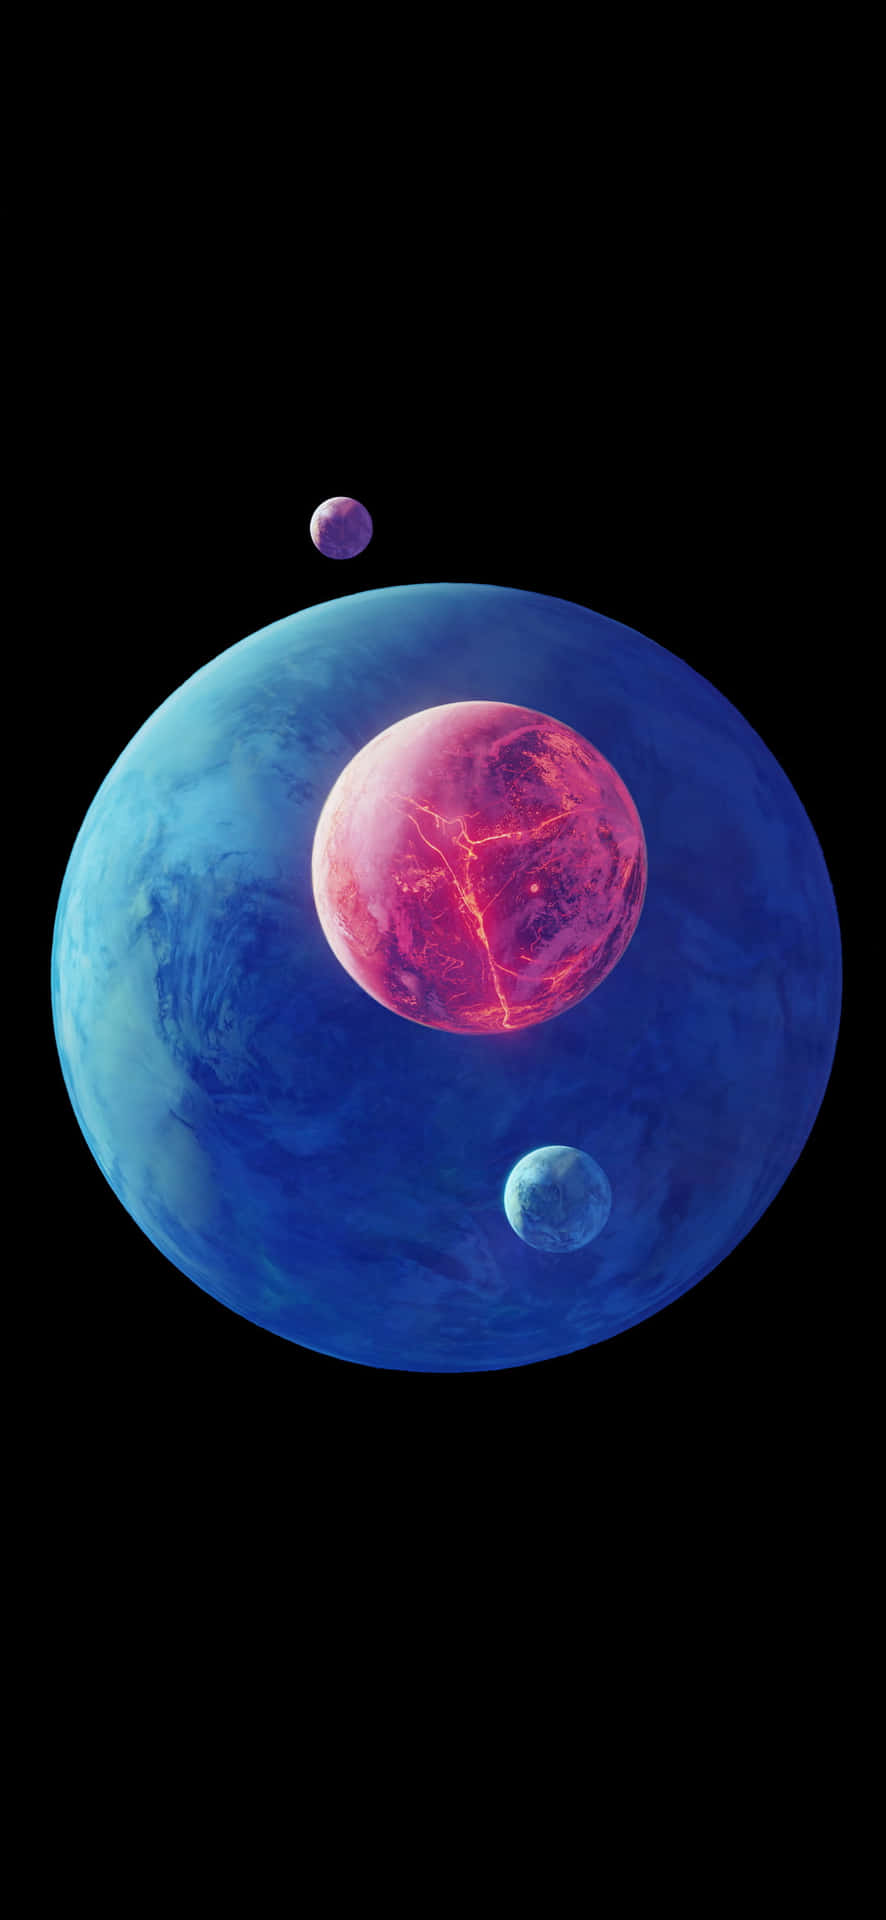 Fundode Tela Amoled 4k De Planetas Azuis E Rosa.